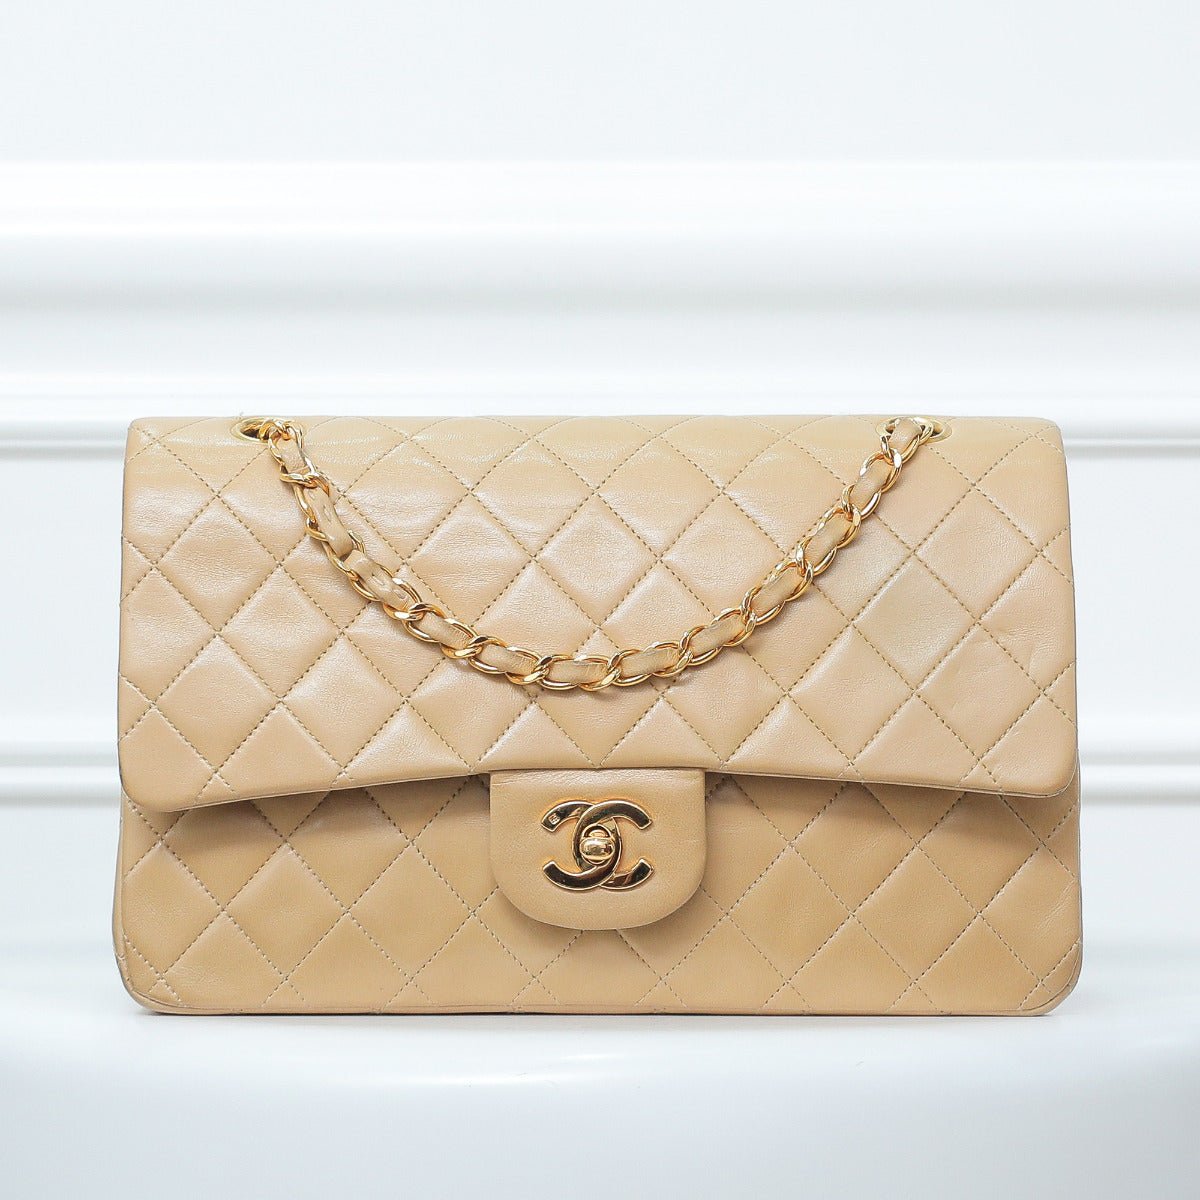 The Closet - Chanel Beige Vintage Classic Double Flap Bag | The Closet